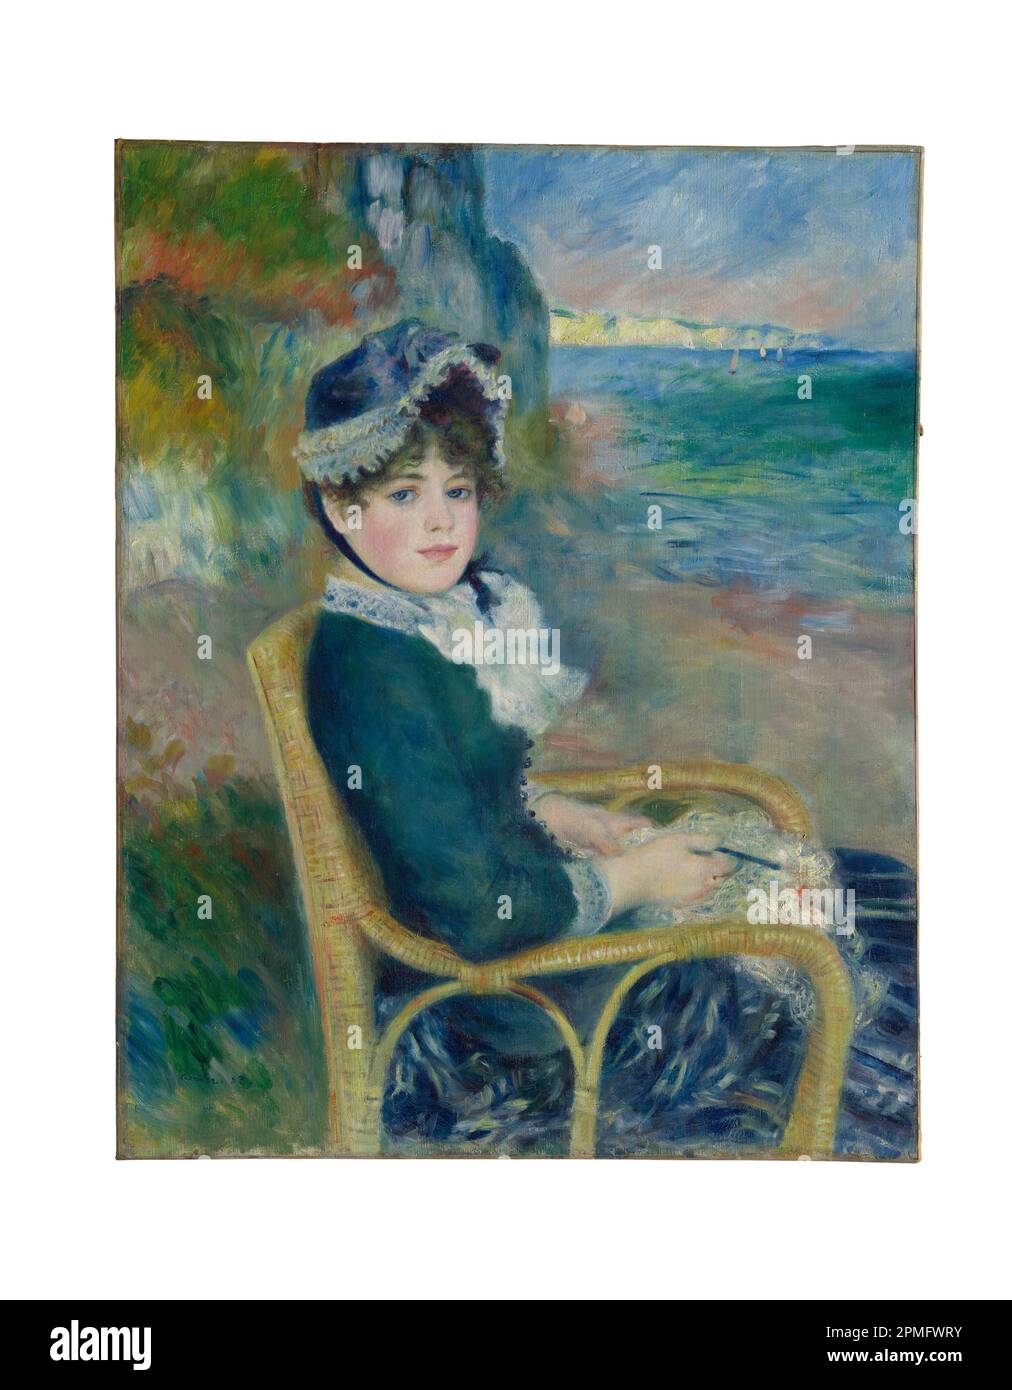 Von der Seashore Öl auf Leinwand Gemälde von Auguste Renoir hergestellt 1883 Stockfoto